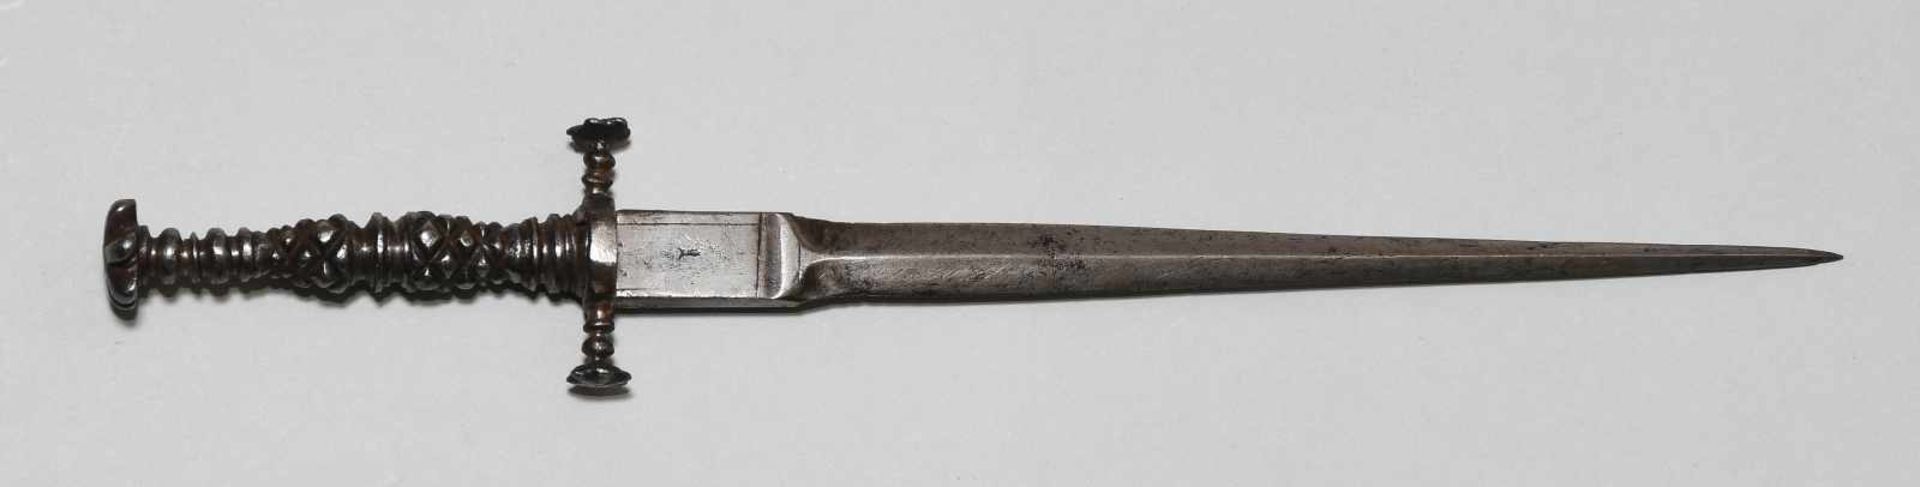 Misericordiaoder Stilett, Italien, 17../18.Jh. Eisengefäss, rippenartig geschnittener massiver Griff - Bild 2 aus 7